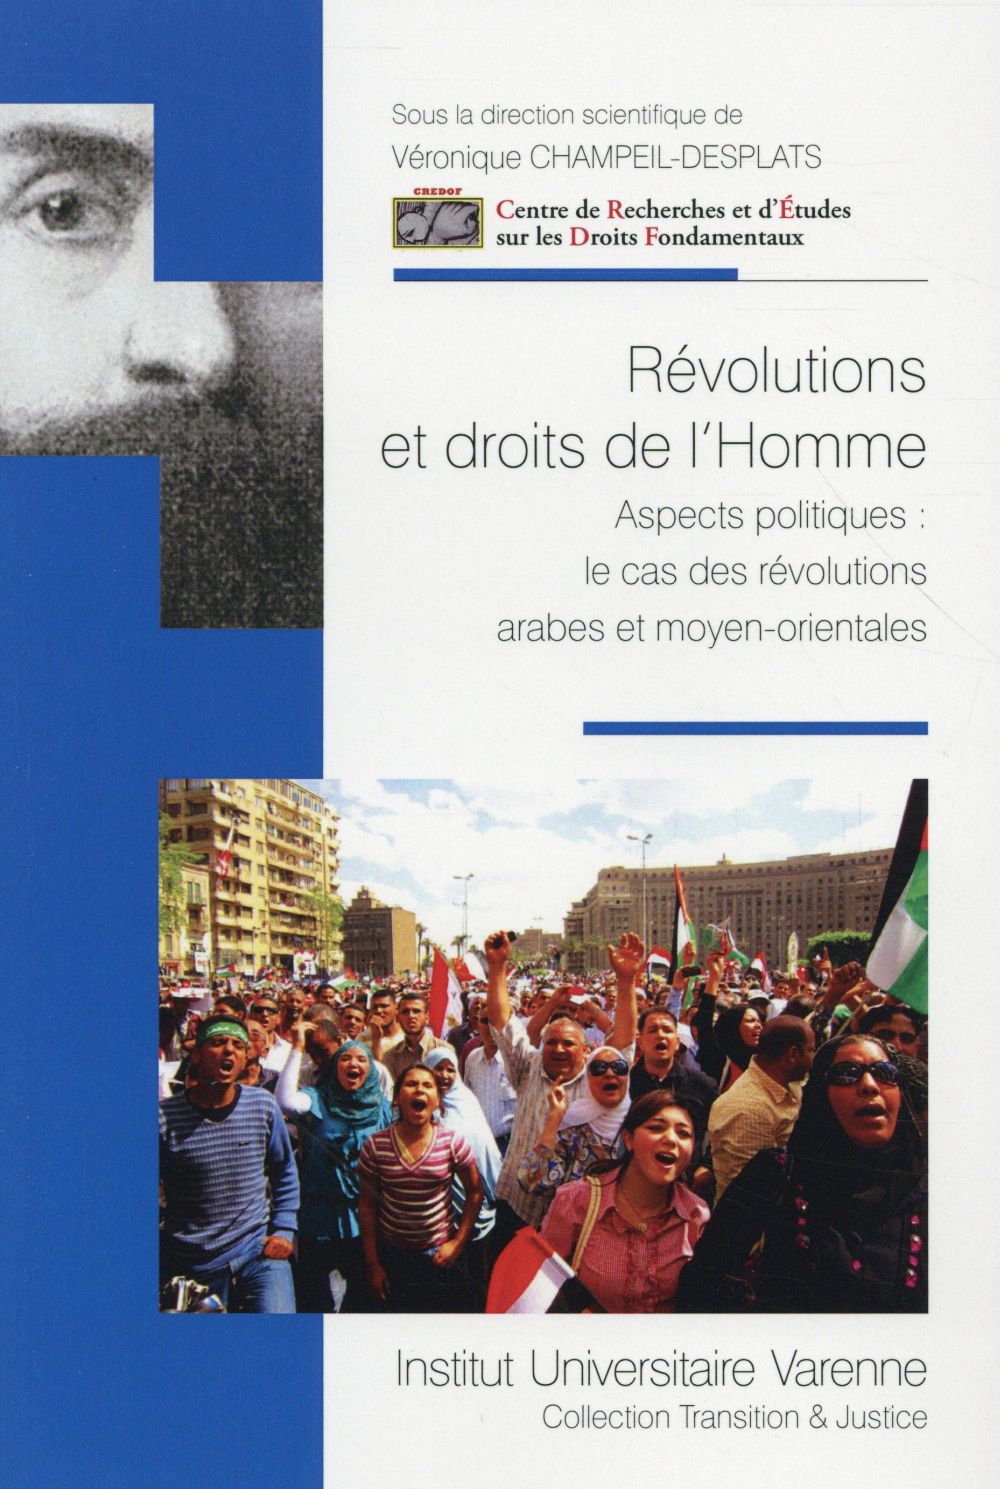 REVOLUTIONS ET DROITS DE L'HOMME ASPECTS POLITIQUES - LE CAS DES REVOLUTIONS ARABES ET MOYEN-ORIENTA